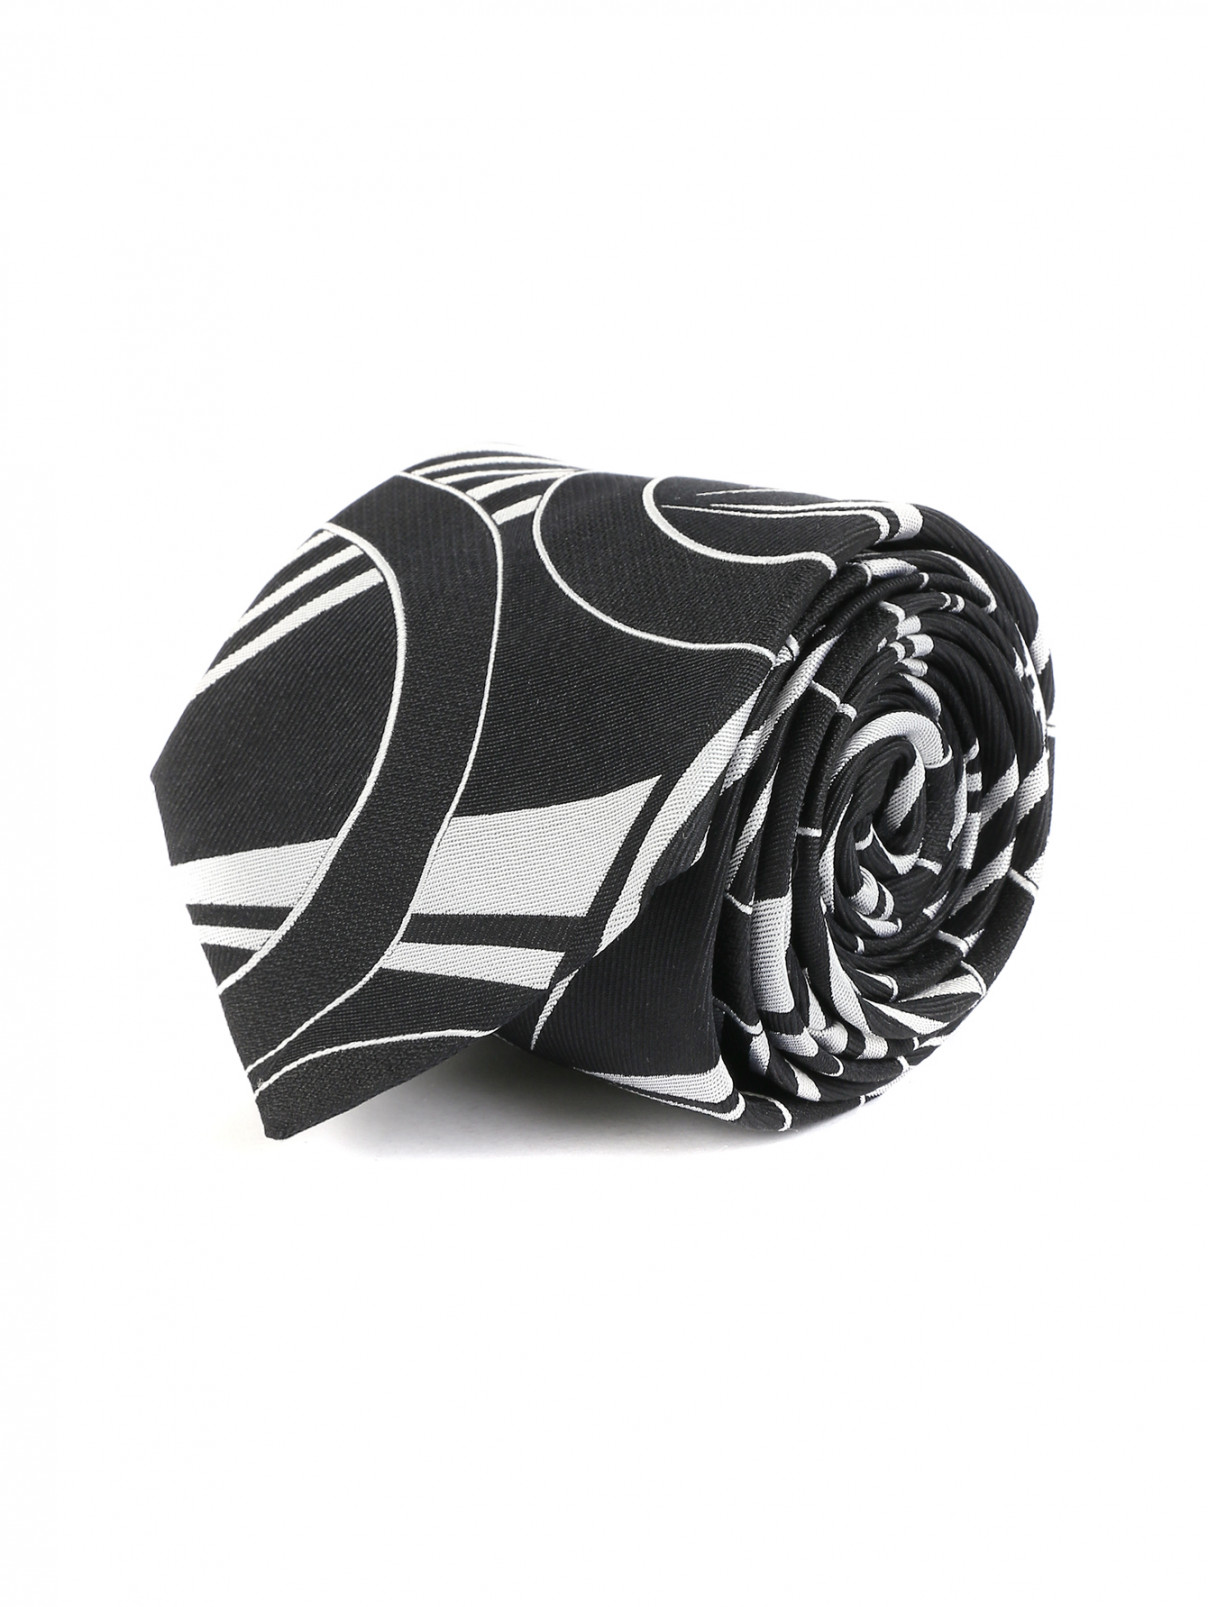 Галстук из шелка с узором Gabriele Pasini  –  Общий вид  – Цвет:  Черный